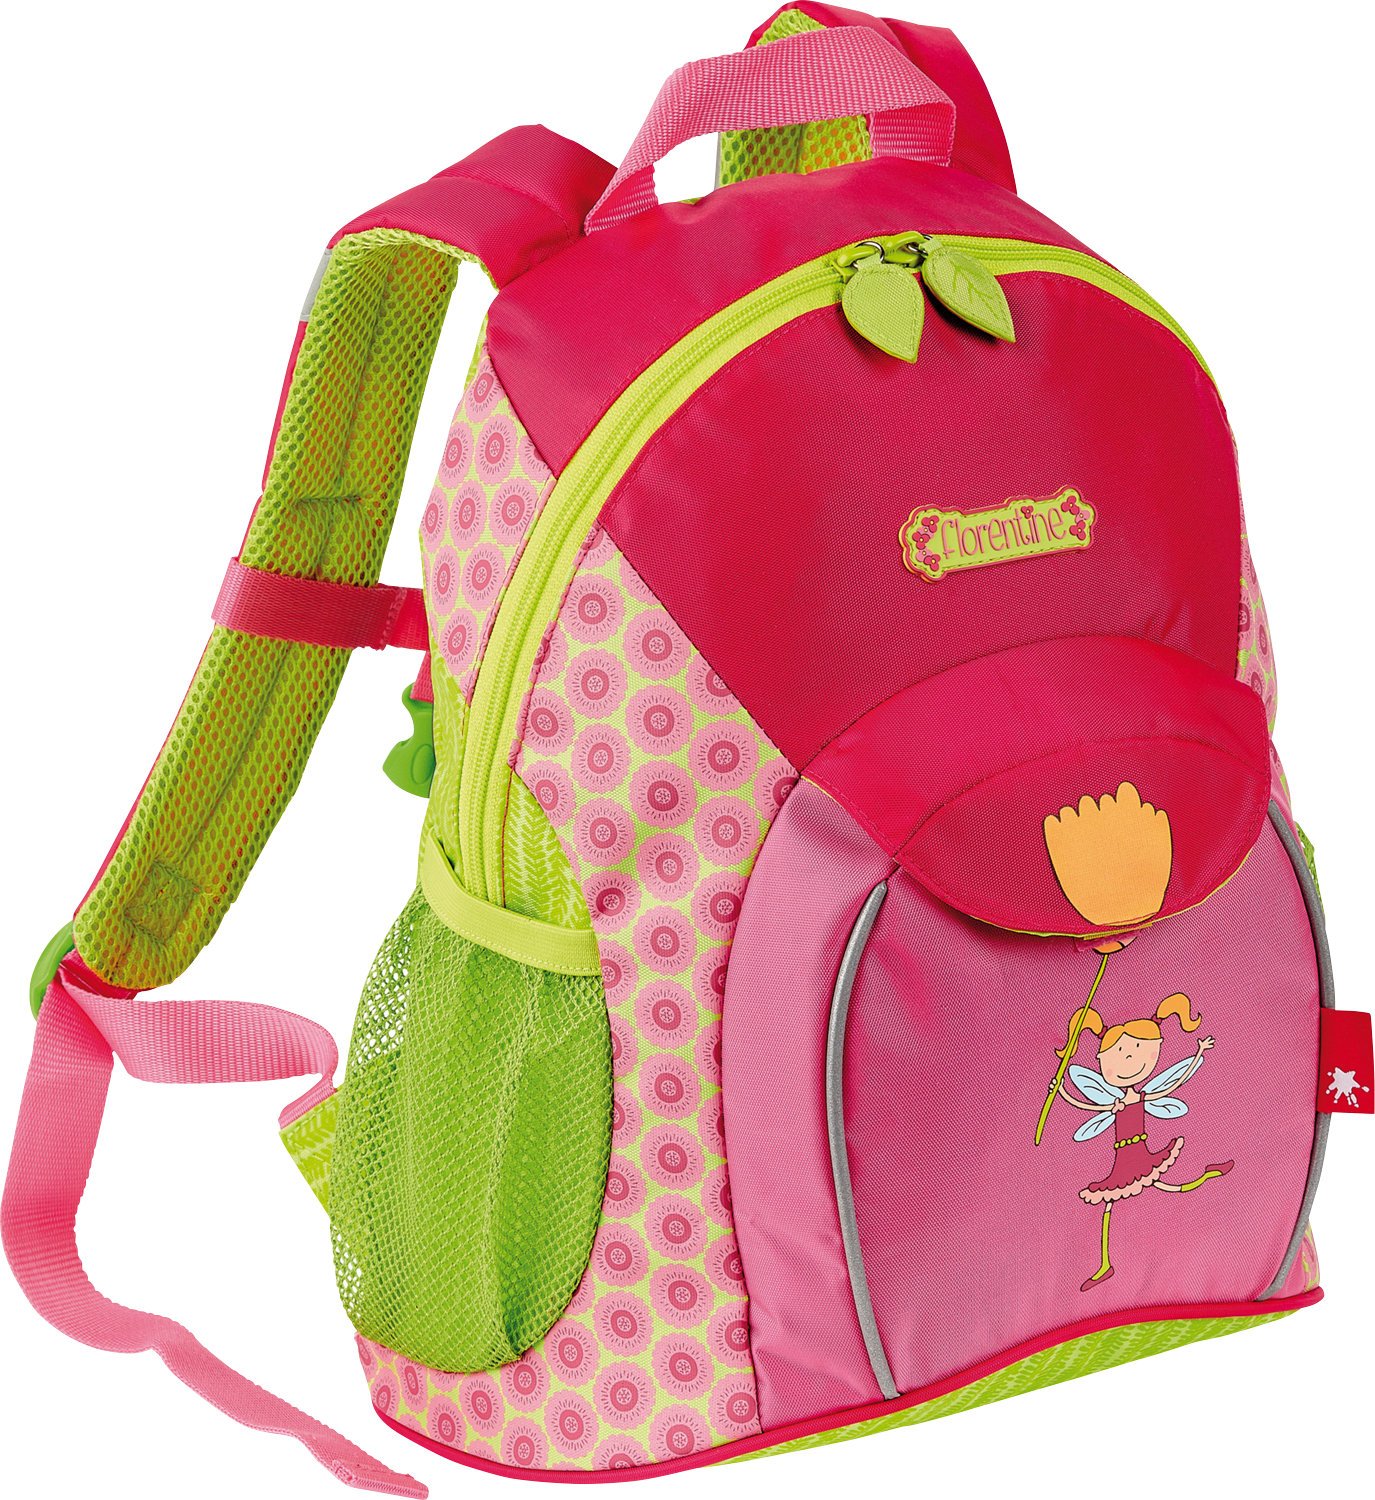 Sigikid 24452 Rucksack groß Florentine Mädchen Kinderrucksack empfohlen ab 3 Jahren grün/rosa, 32 cm